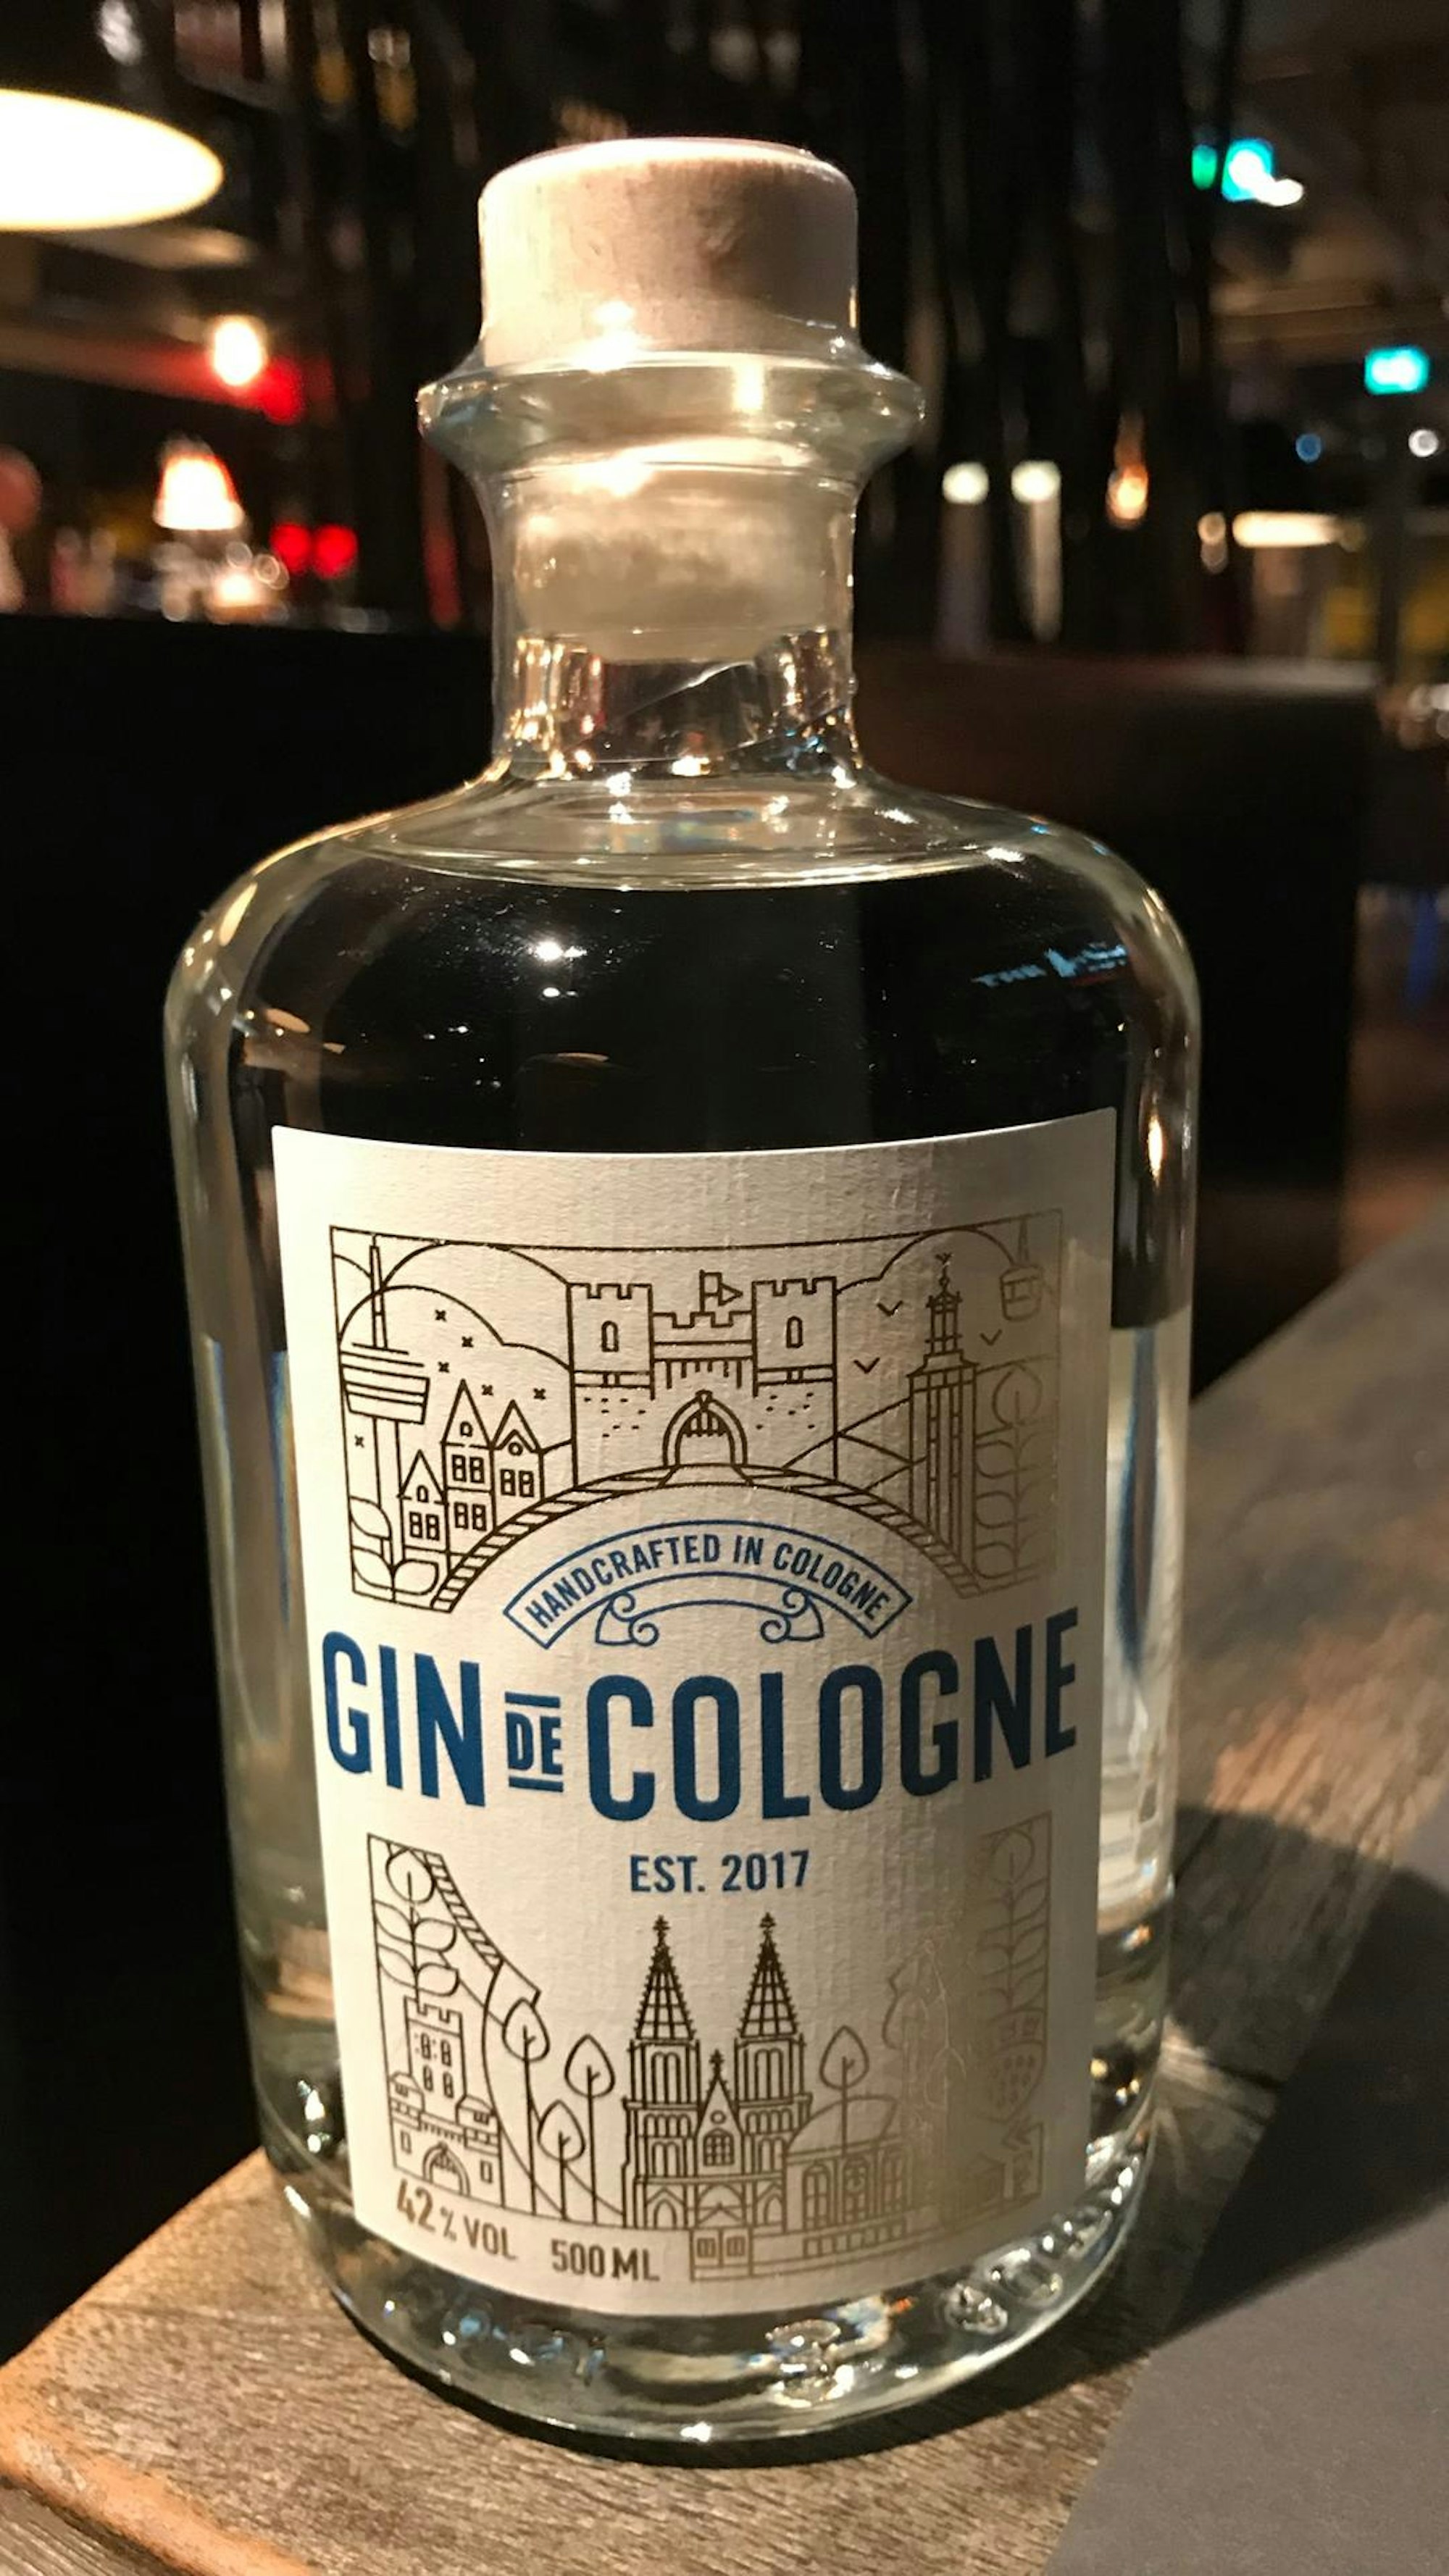 Gin de Cologne